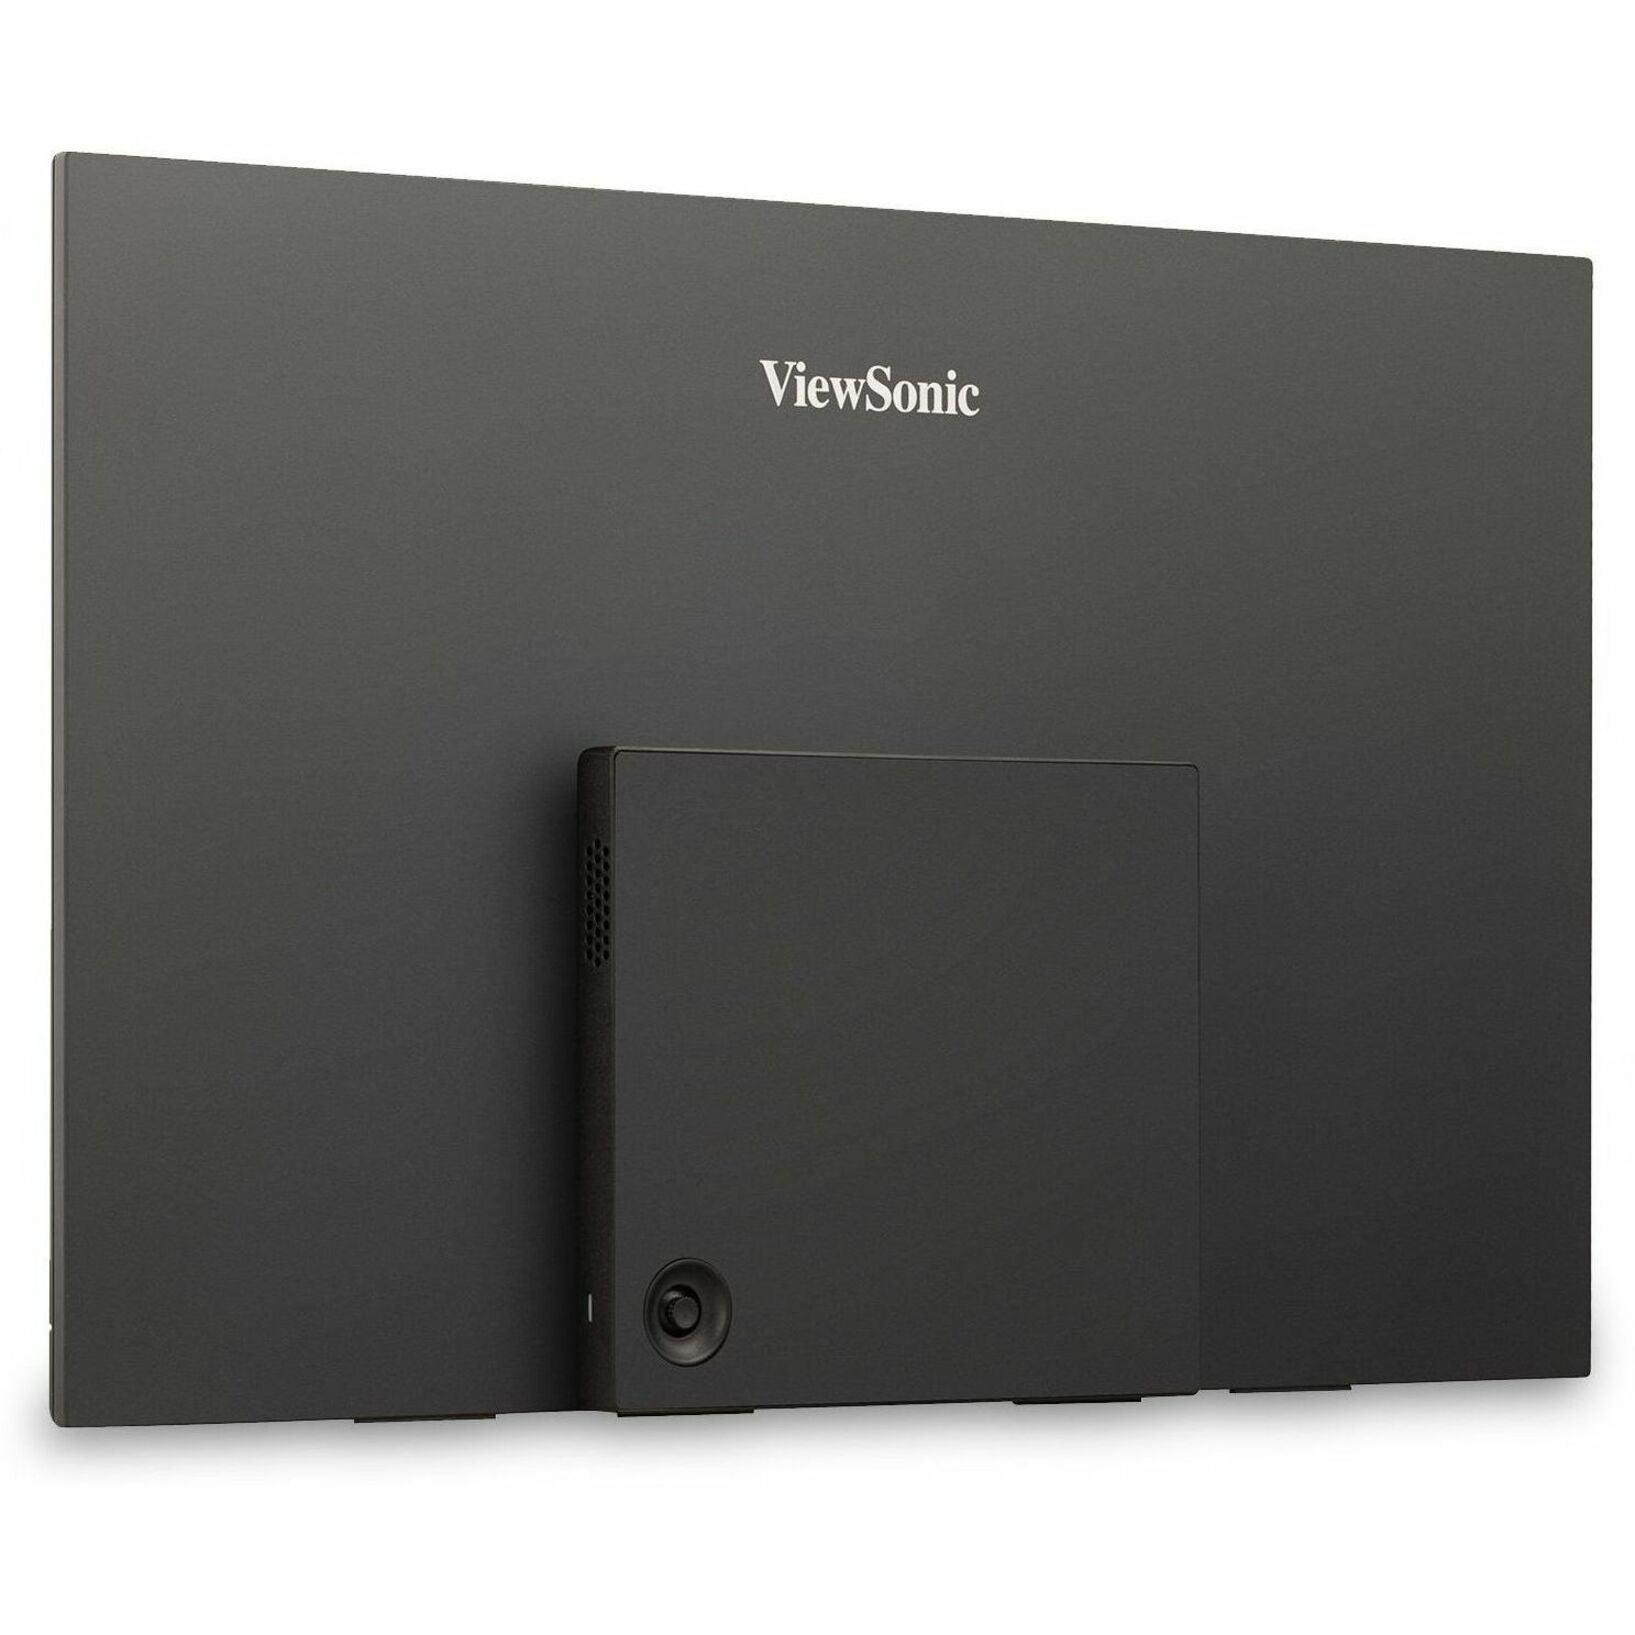 ViewSonic VX1655-4KゲーミングLEDモニター、15.6インチ4K UHDポータブルモニター、60W USB CとミニHDMI